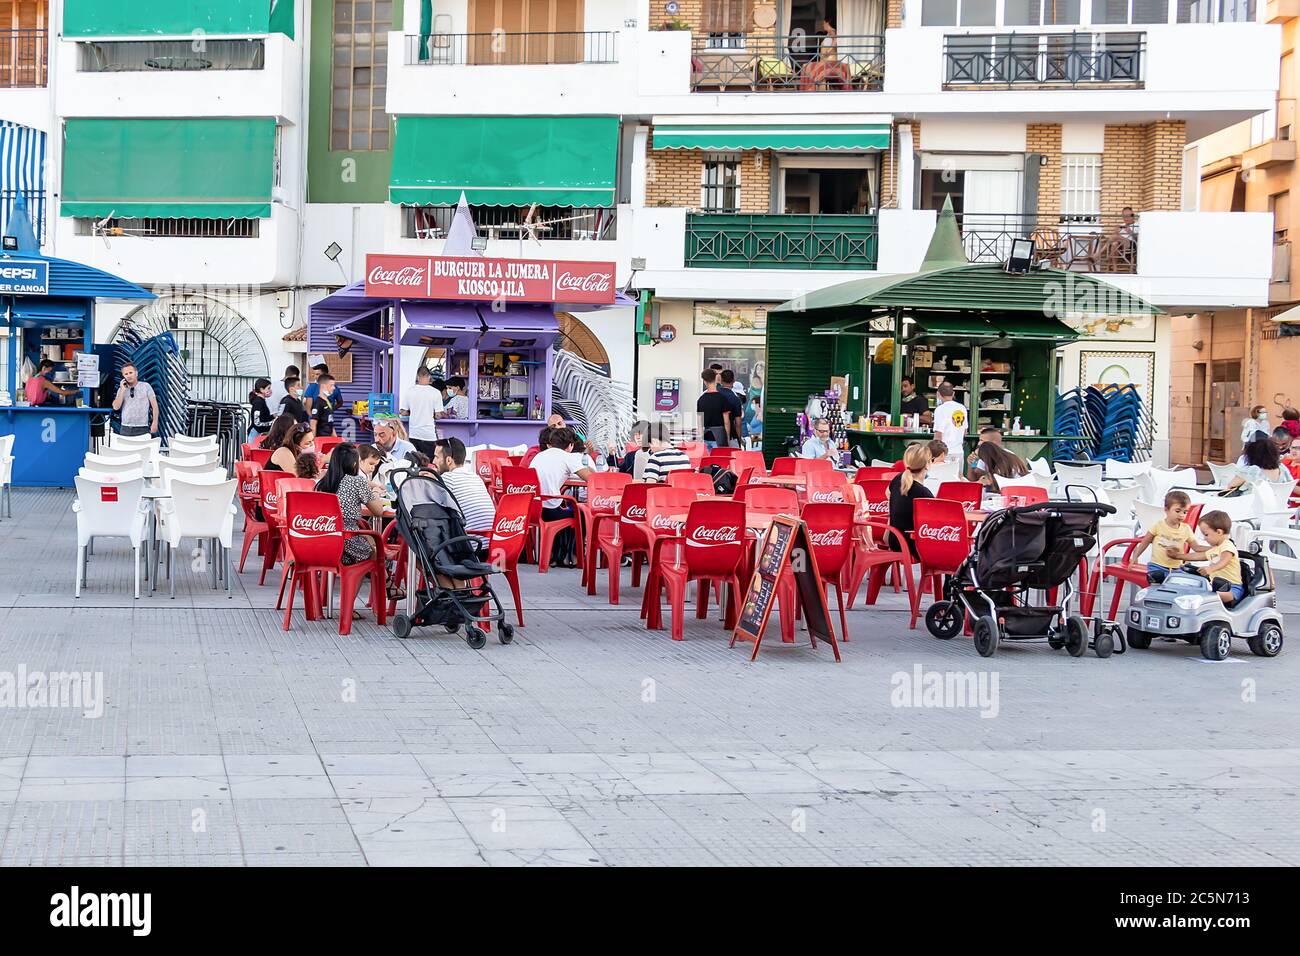 Punta Umbria, Huelva, Spanien - 3. Juni 2020: Menschen, die auf der Terrasse eines Cafés und einer Bar sitzen, tragen eine Schutzmaske wegen covid-19. Huelva, Spanien Stockfoto